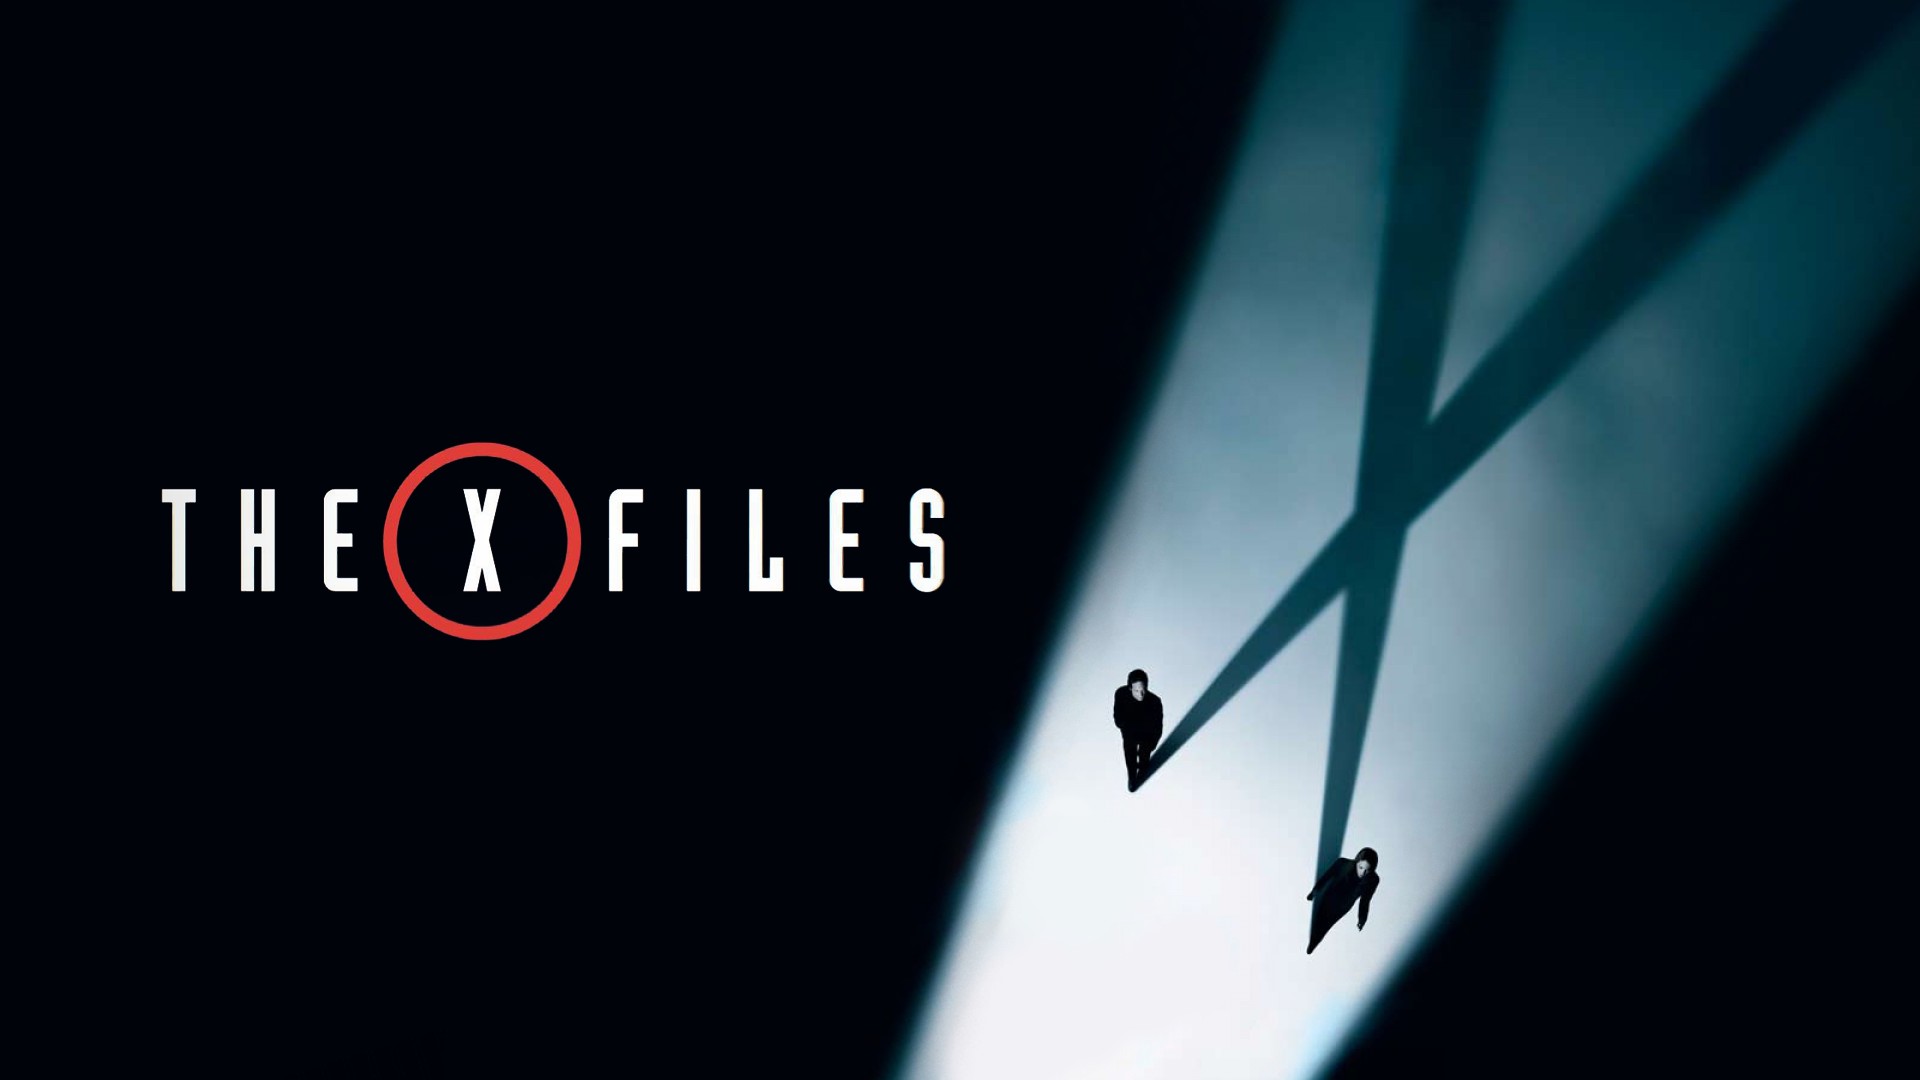 Dana Scully, Gillian Anderson, David Duchovny, Fox Mulder, The X Files Wallpaper